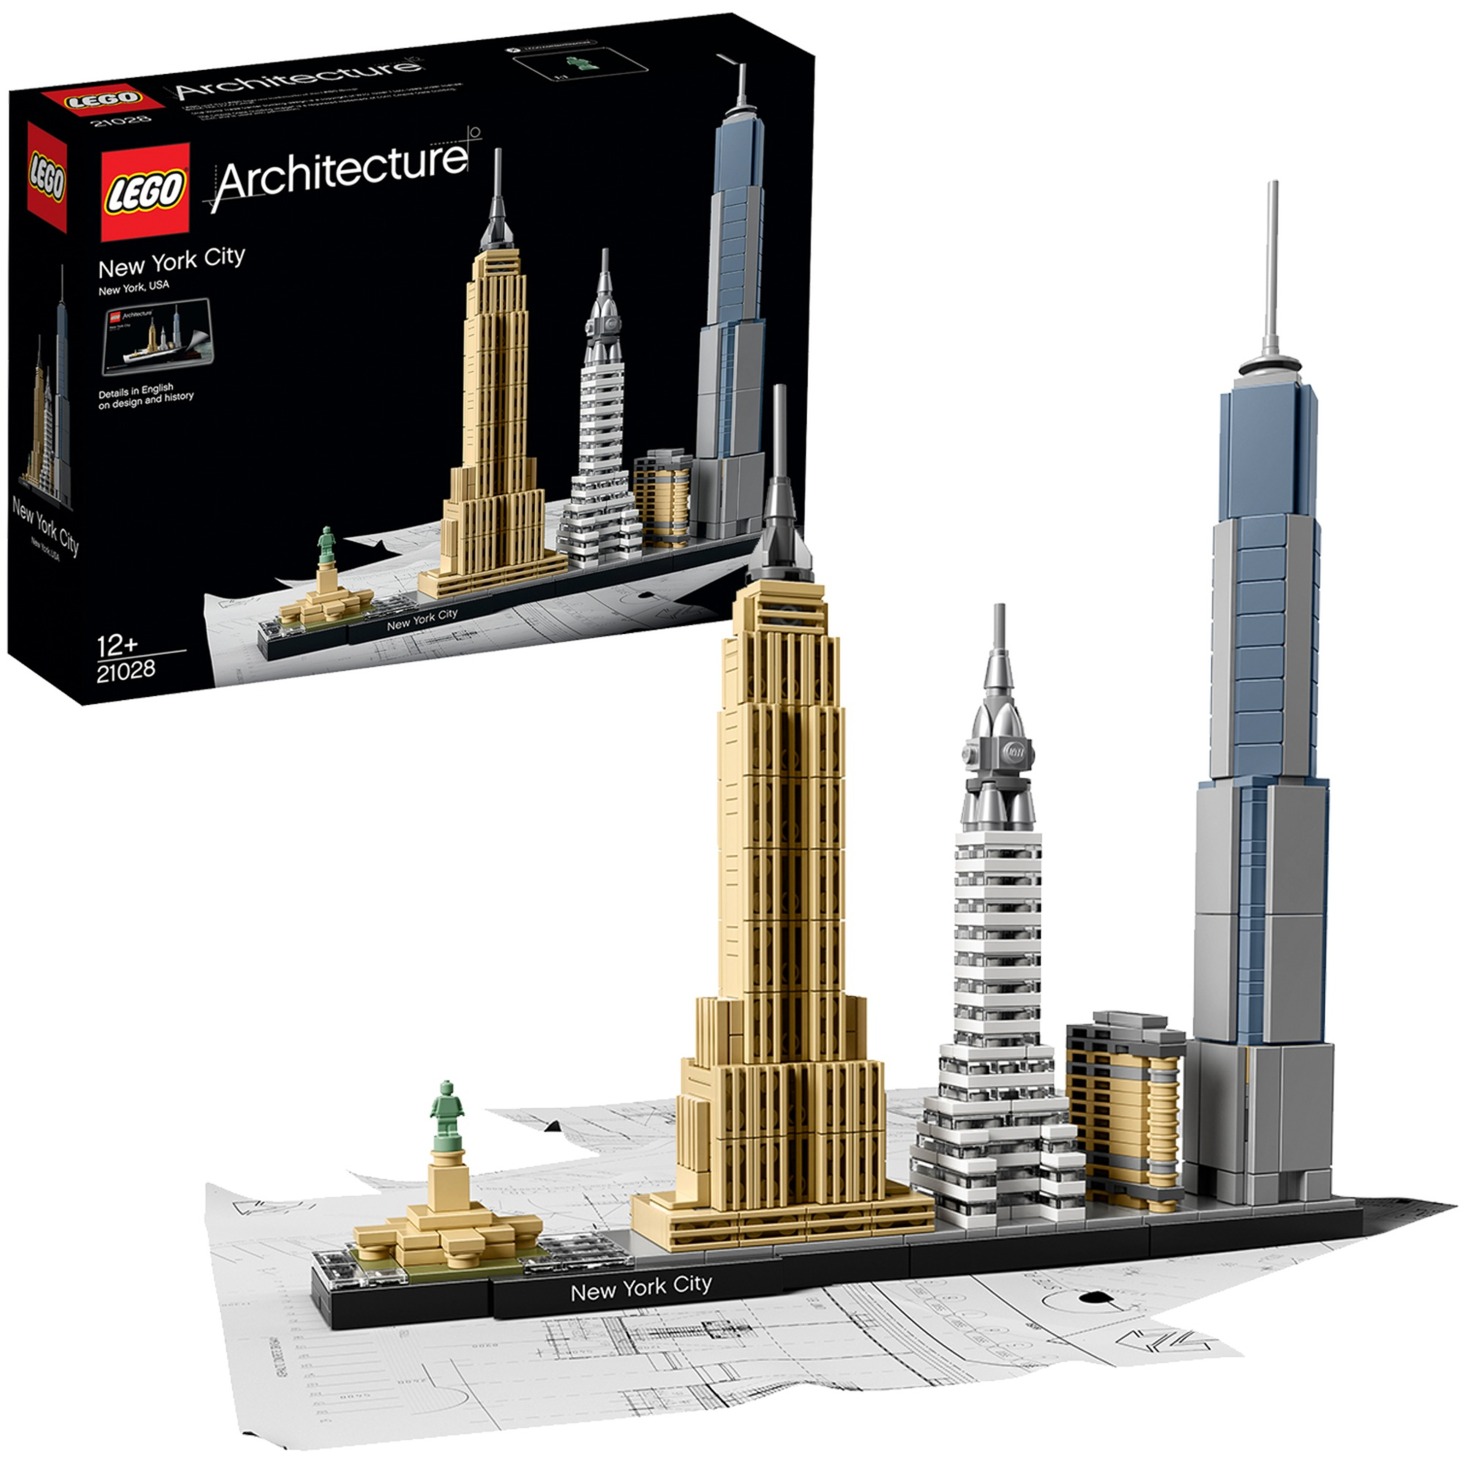 Image of Alternate - 21028 Architecture New York City, Konstruktionsspielzeug online einkaufen bei Alternate